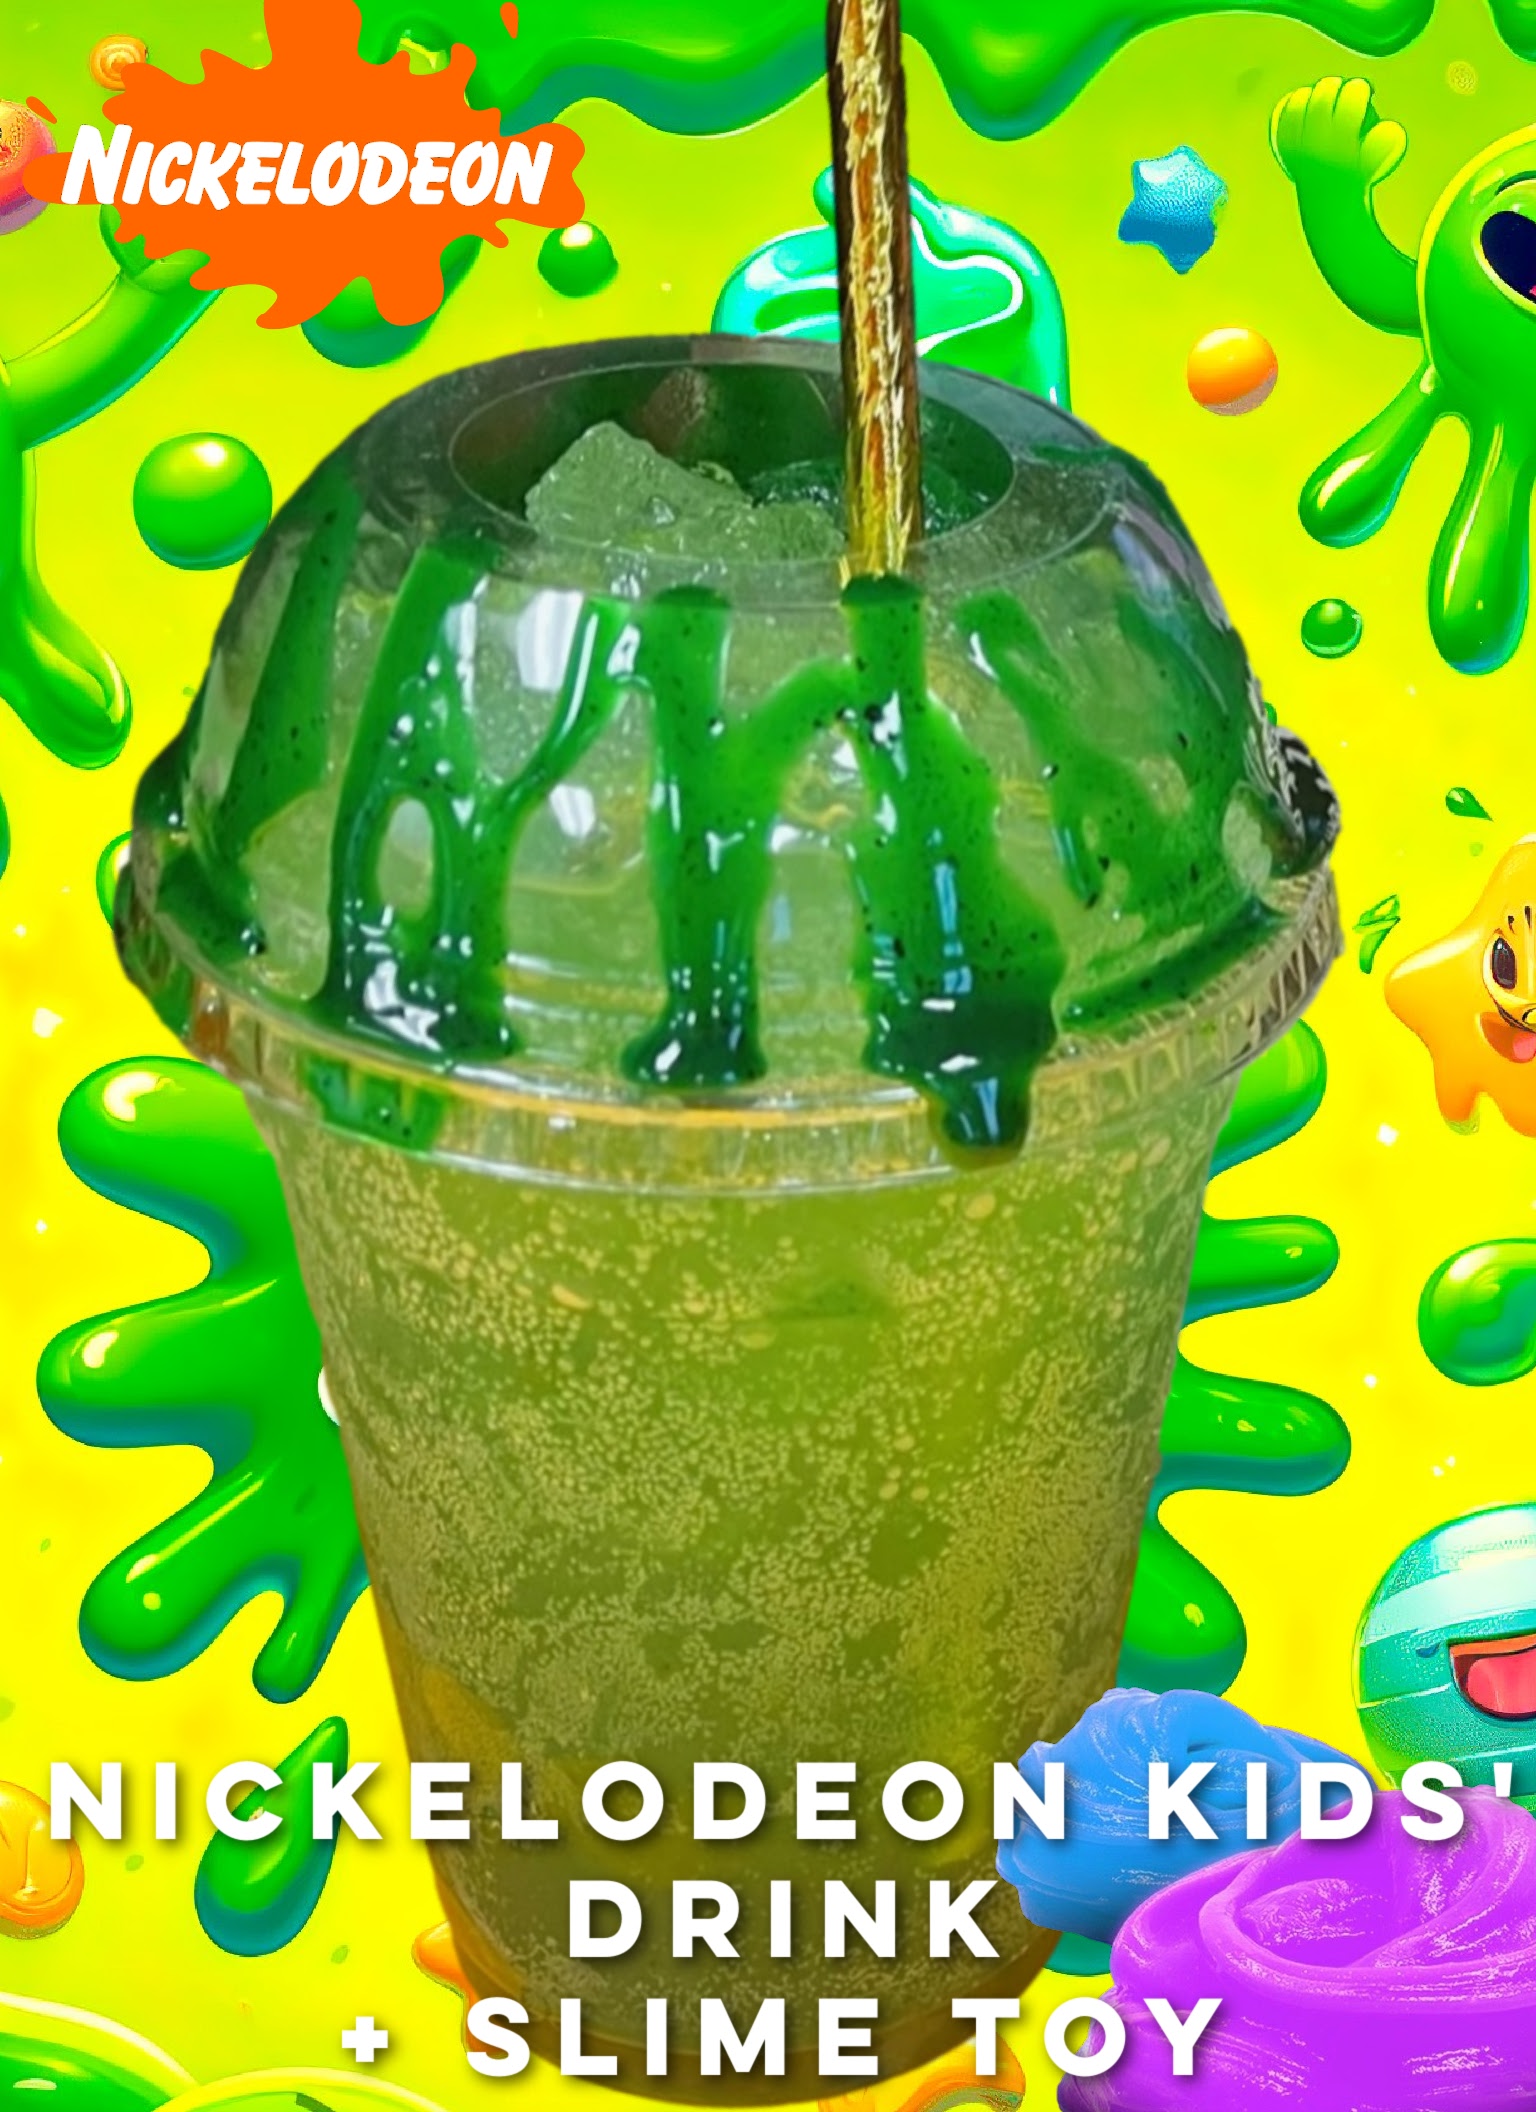 Nickelodeon Kids' Drink + Slime Toy